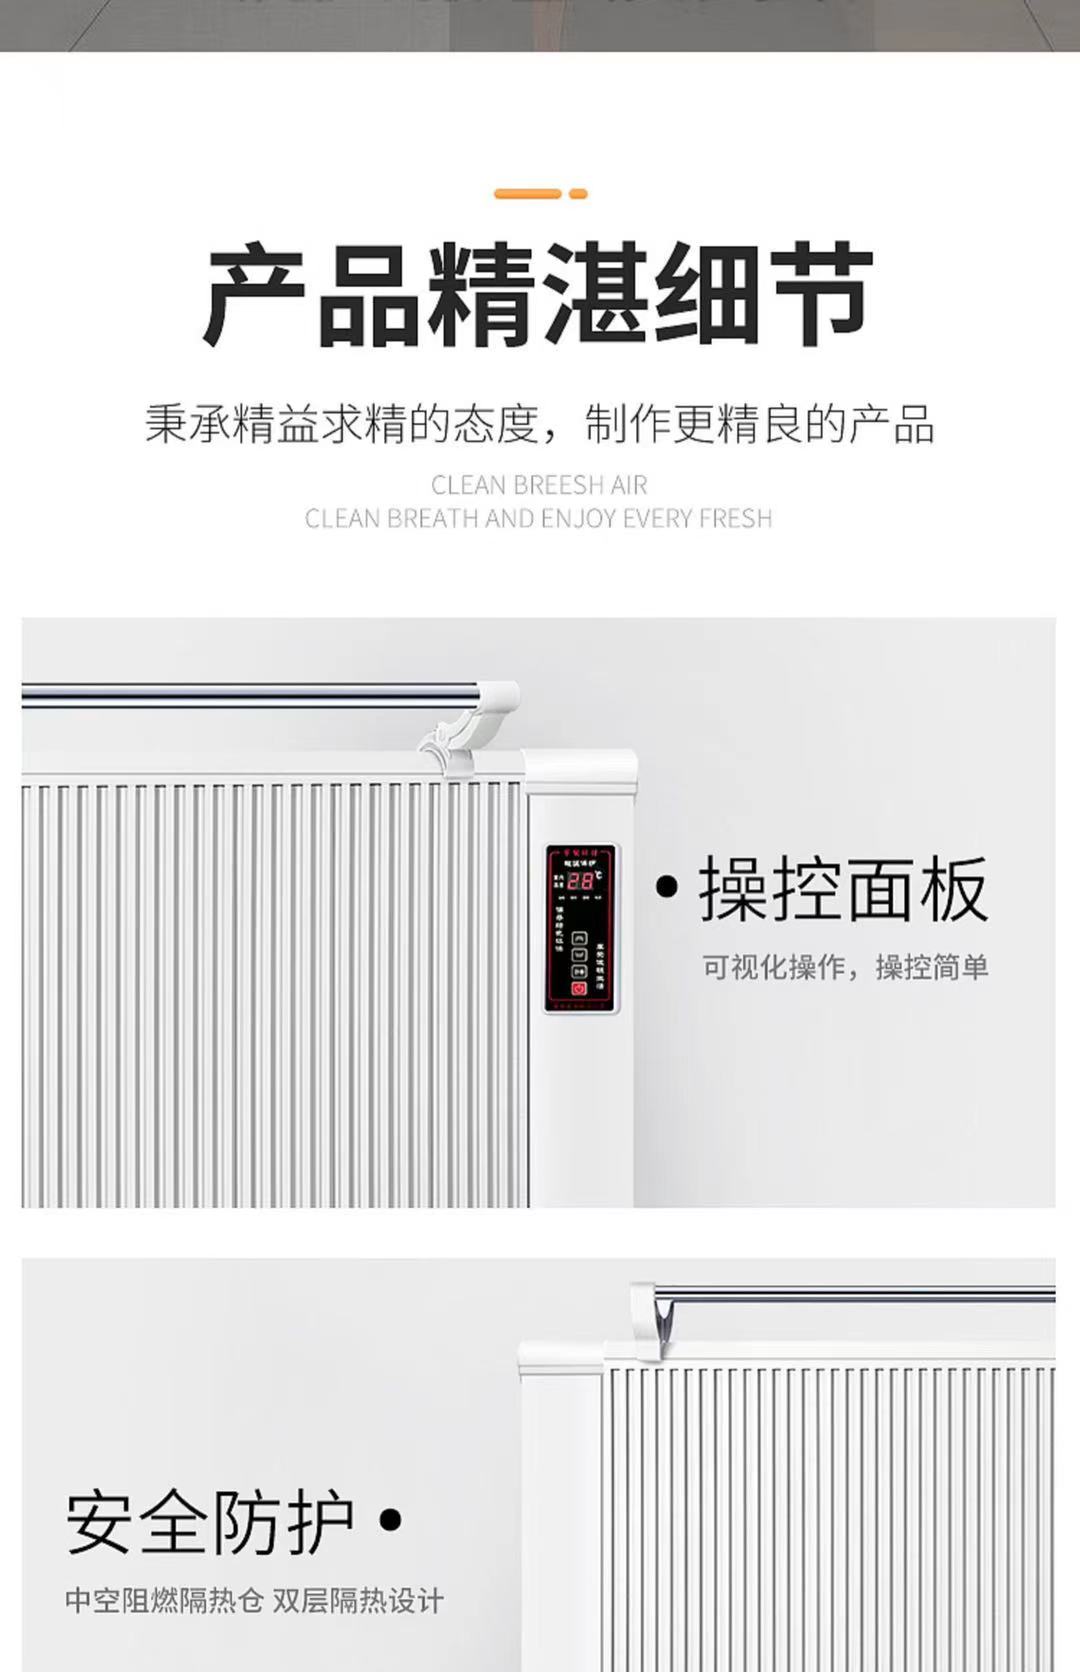 壁挂式电暖器 国锐厂家现货供应 碳纤维电暖器 煤改电取暖器 碳晶取暖器1